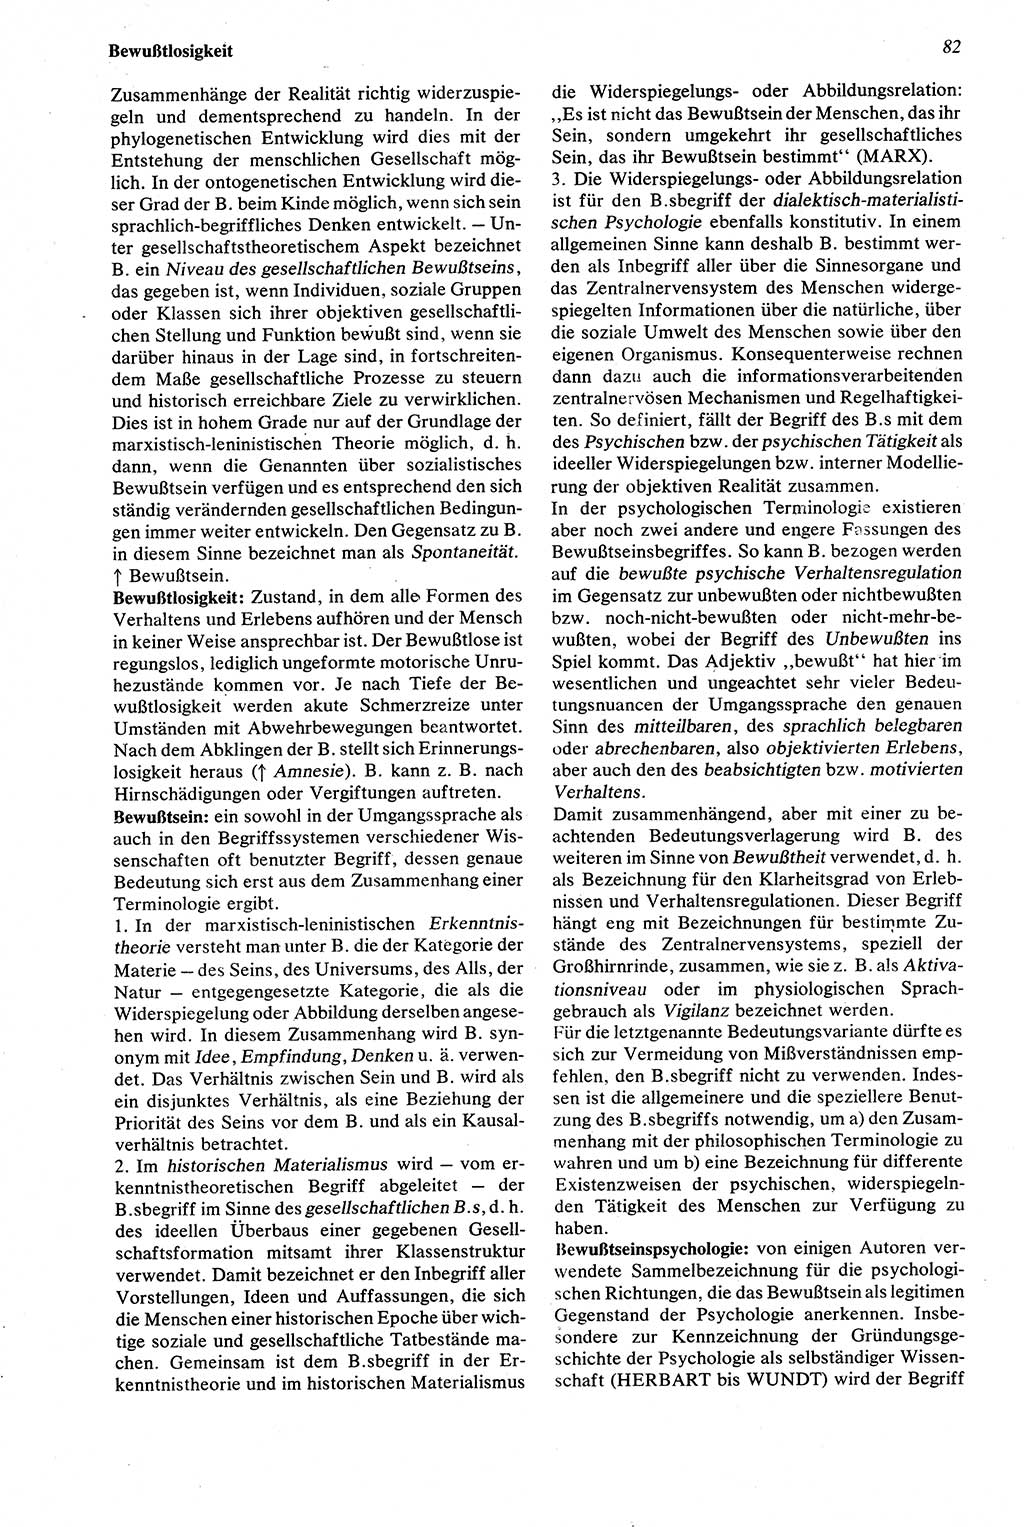 Wörterbuch der Psychologie [Deutsche Demokratische Republik (DDR)] 1976, Seite 82 (Wb. Psych. DDR 1976, S. 82)